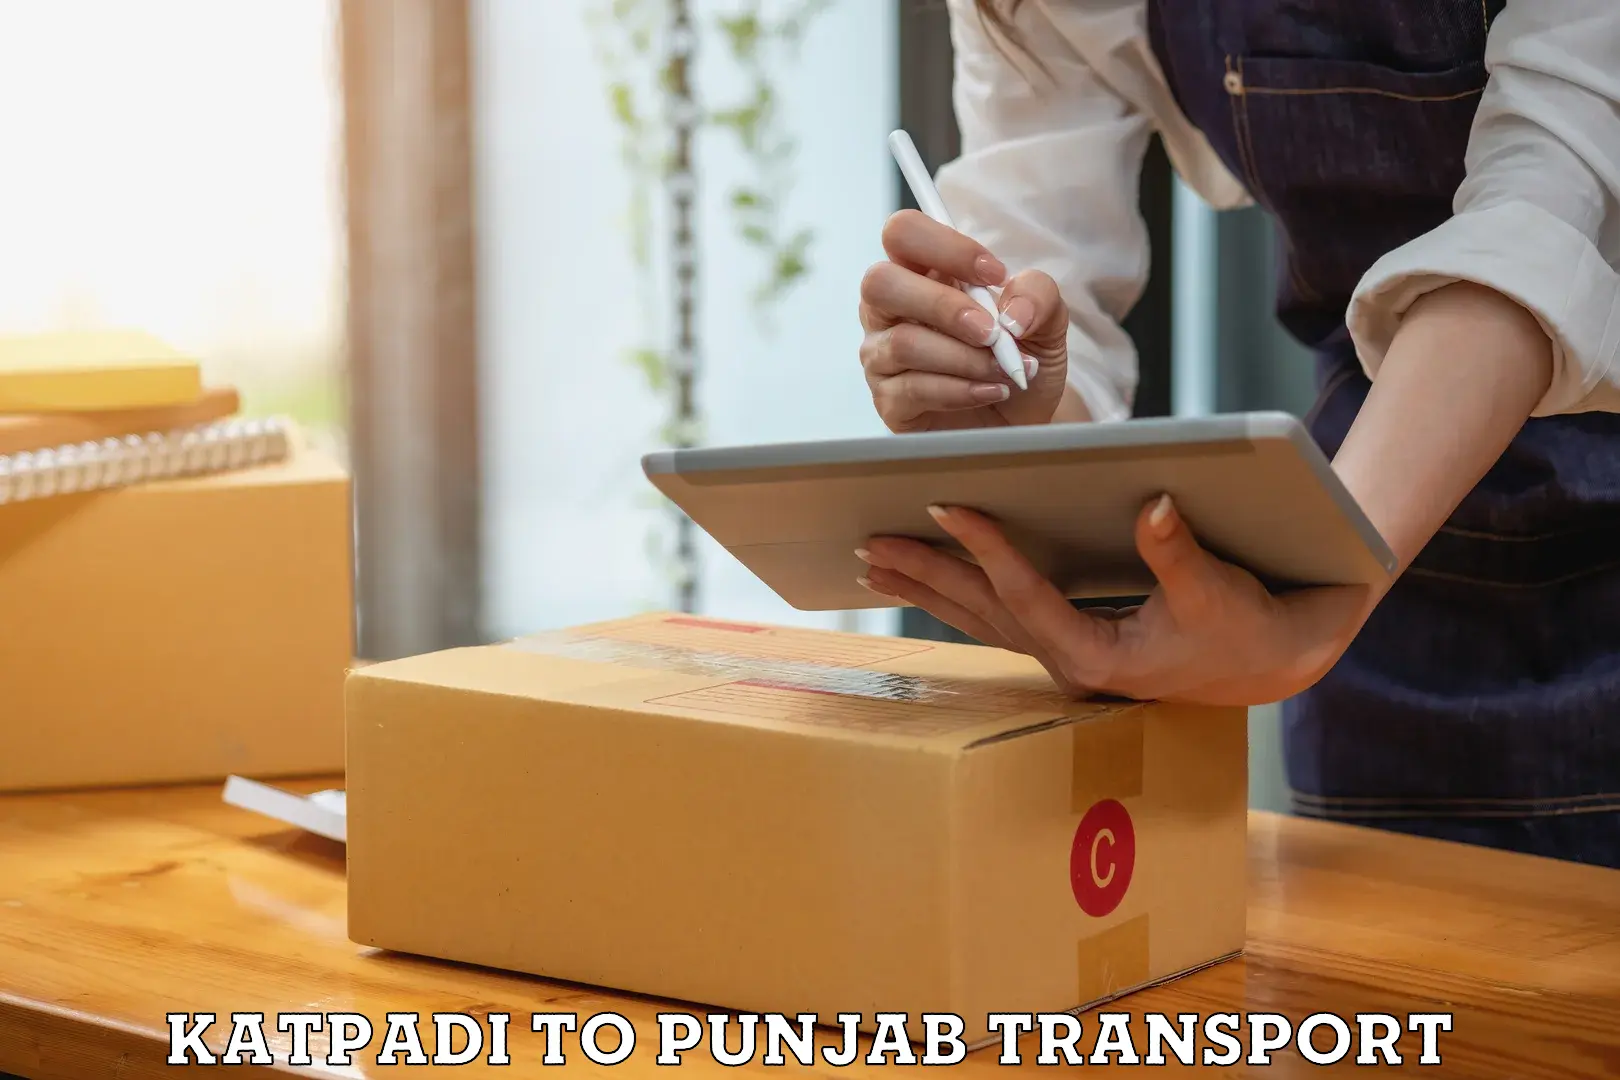 International cargo transportation services Katpadi to Punjab